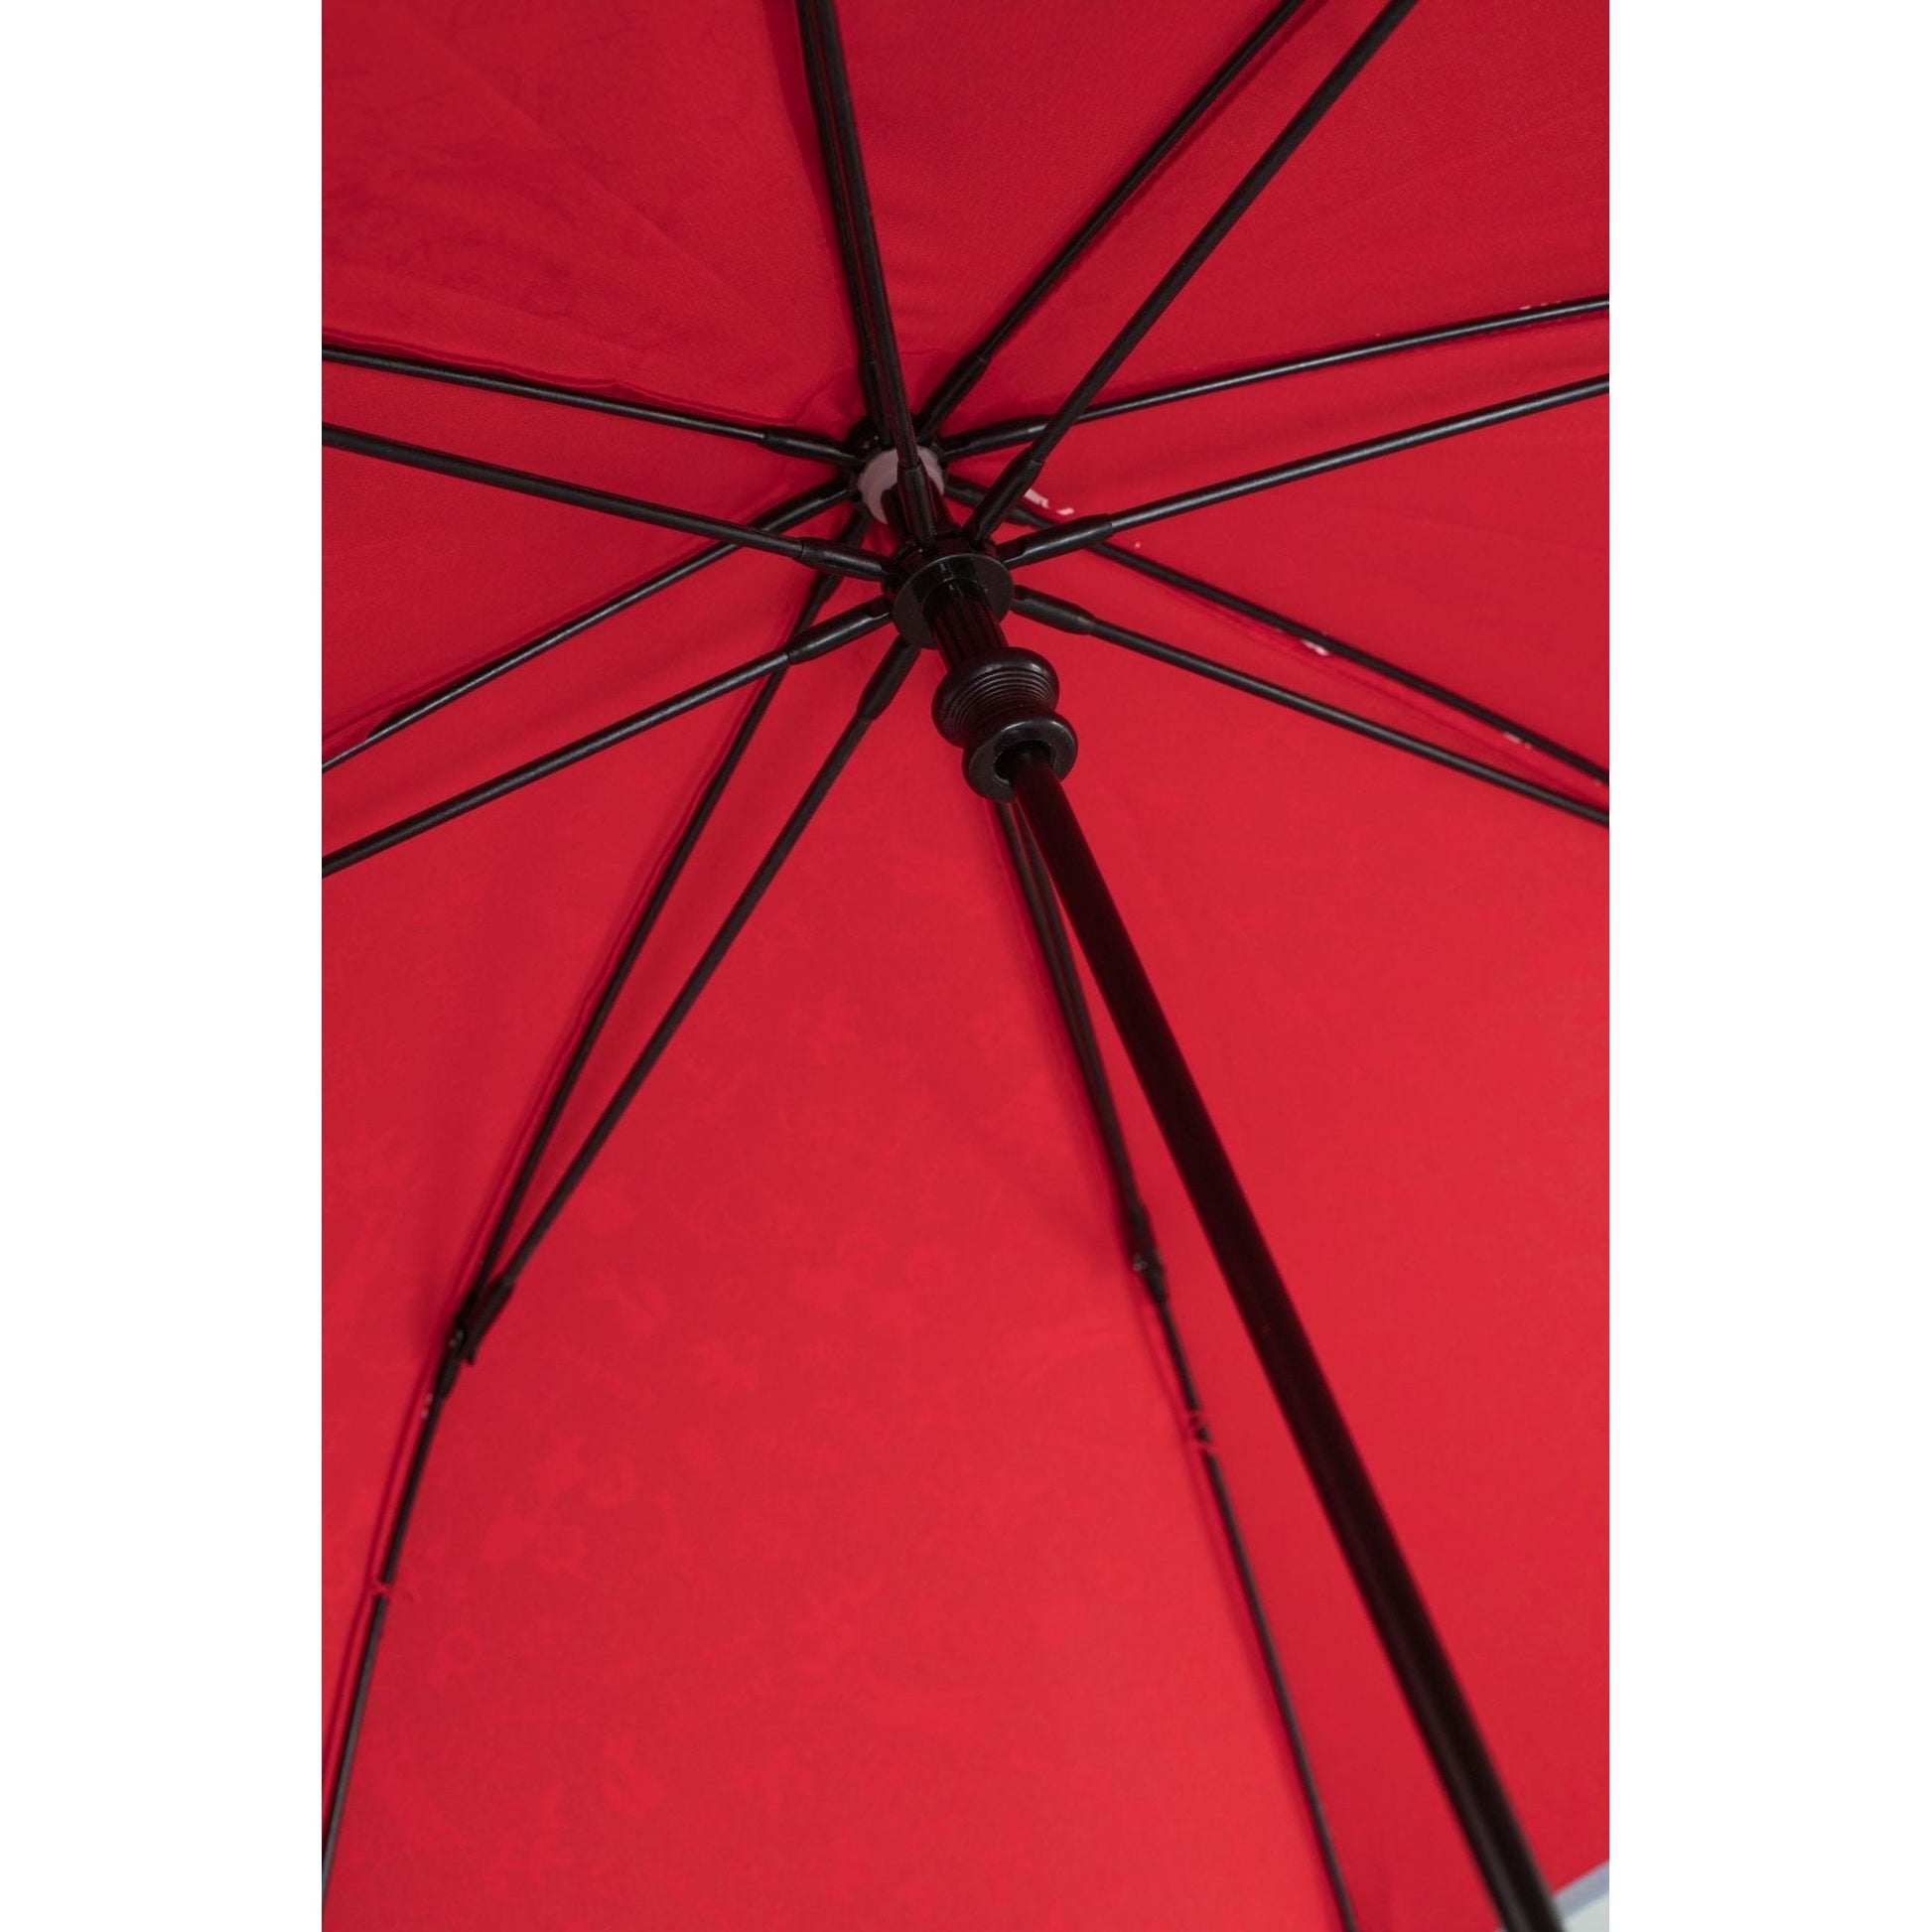 Mumitroldene paraply 74cm til børn rød - Dsignhouse